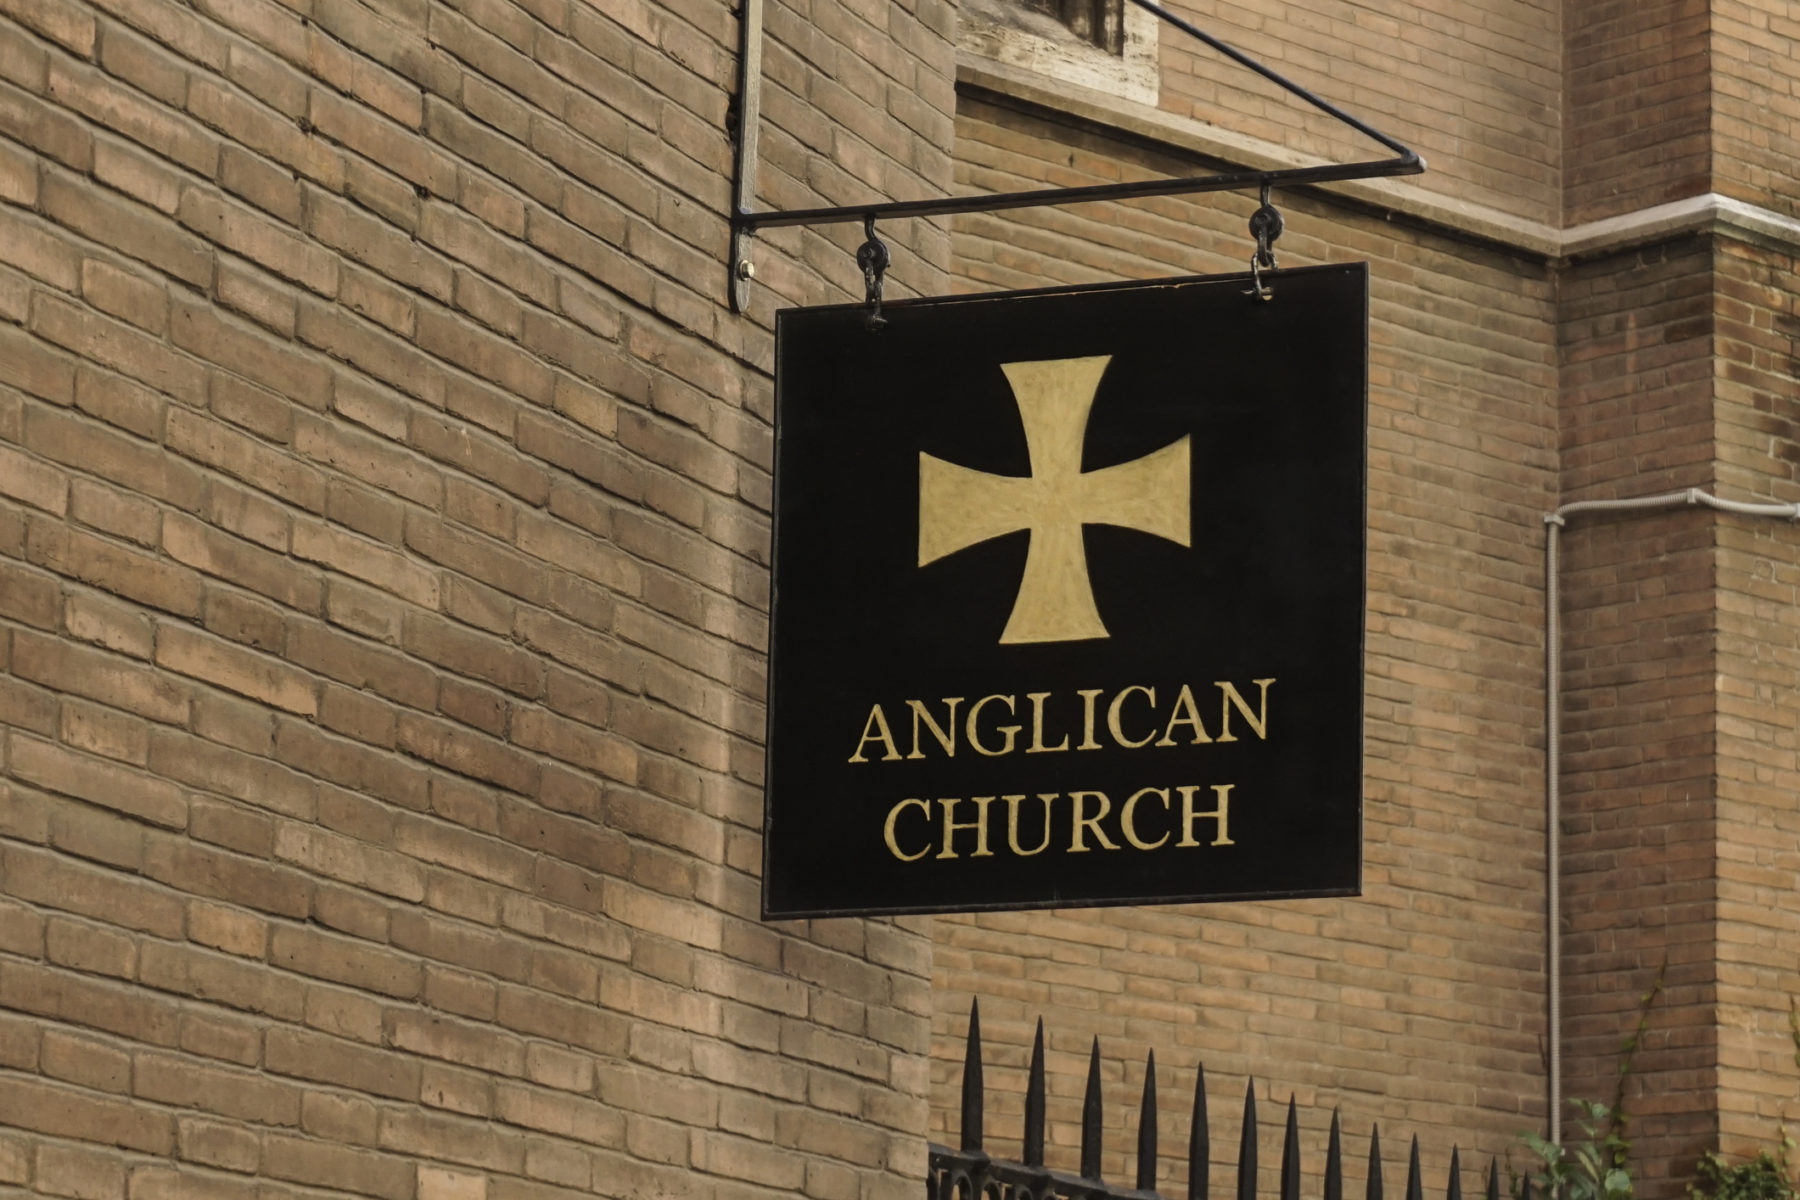 Enseigne d'une Eglise anglican fixée à un mur. Sur fond noir, une croix dorée, ainsi que les mots "Anglican Church" apparaissent.